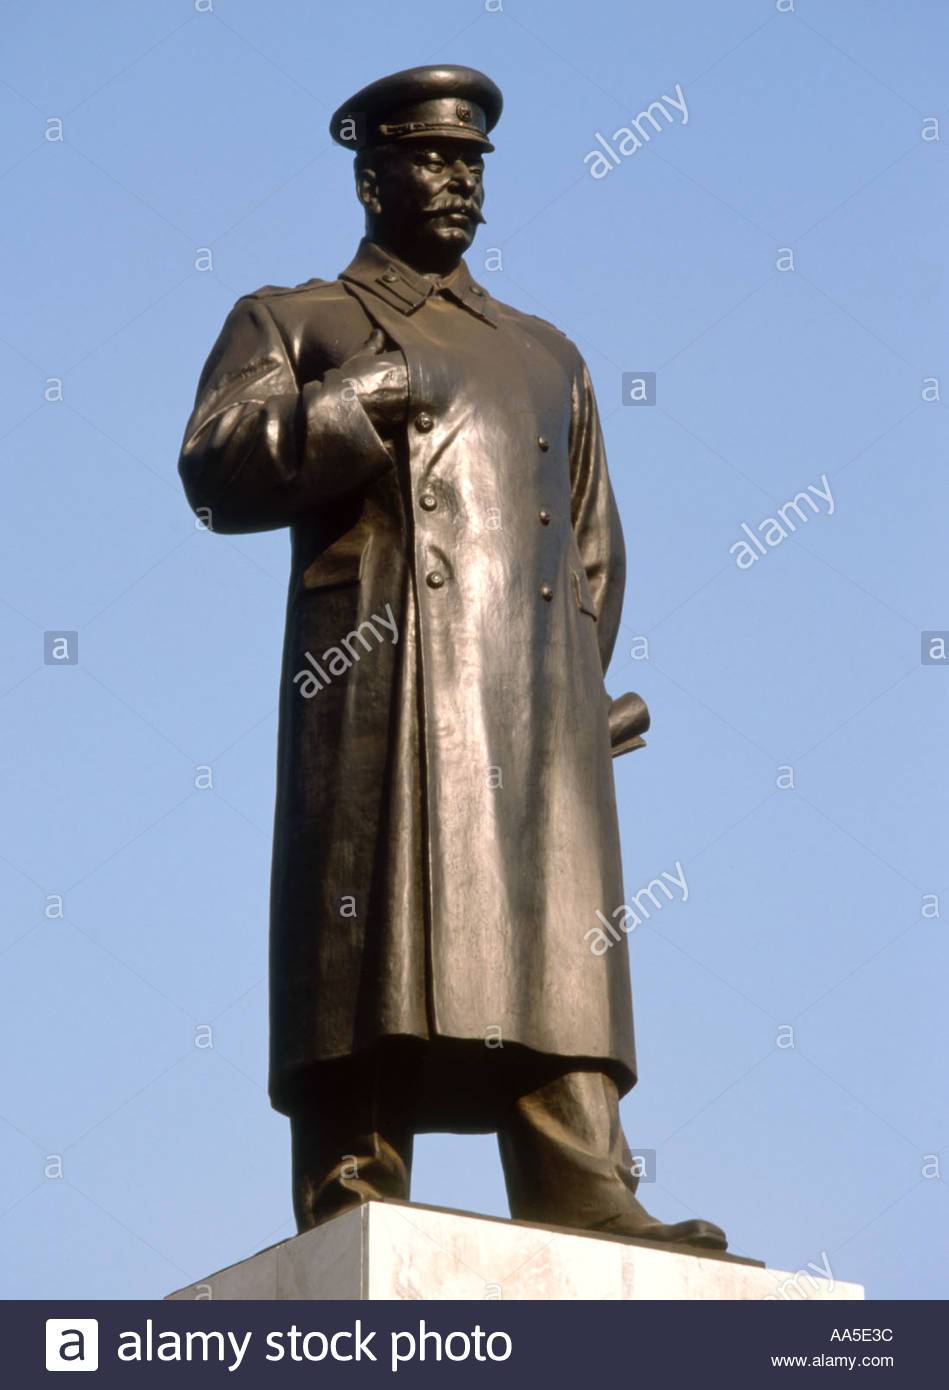 albania-stalin-estatua-aa5e3c.jpg